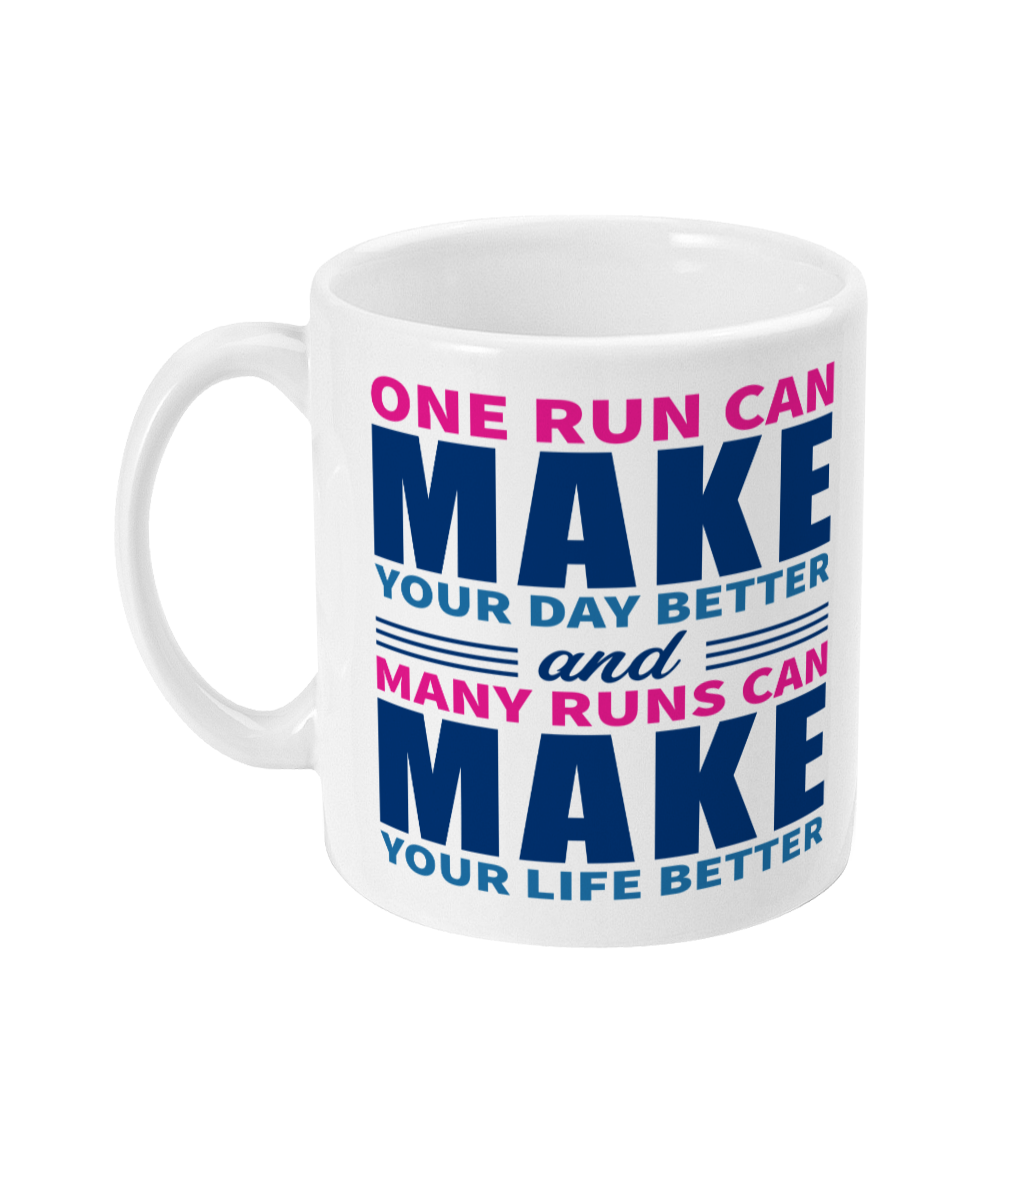 Motivational Runner's Mug